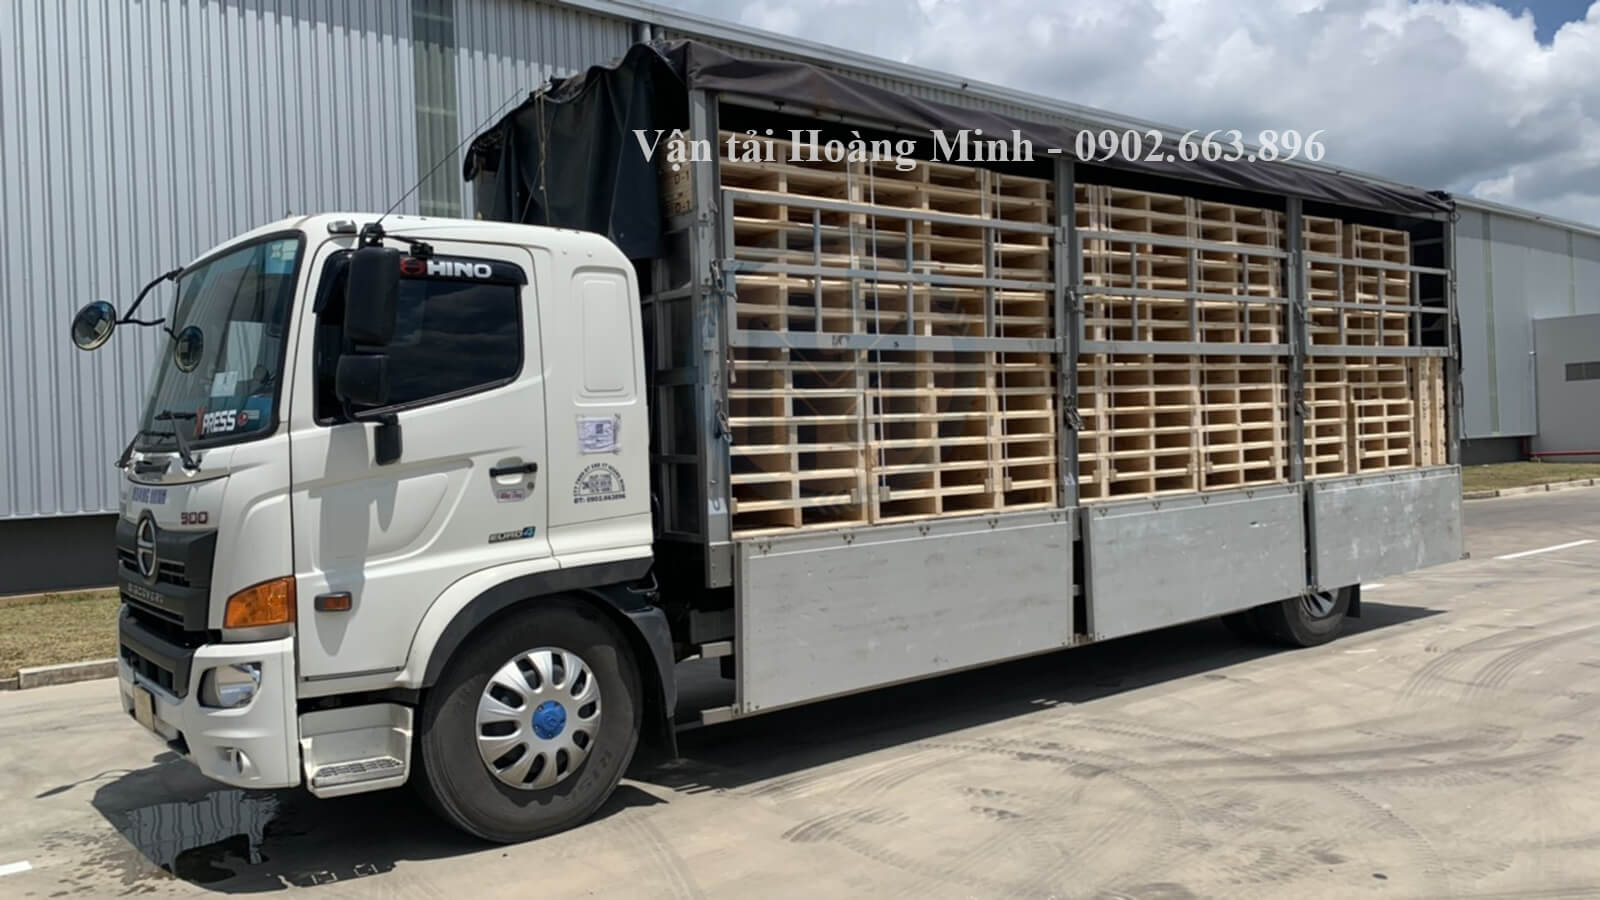 Sơ lược về dịch vụ cho thuê xe tải chở hàng Bắc Nam của Vận tải Hoàng Minh